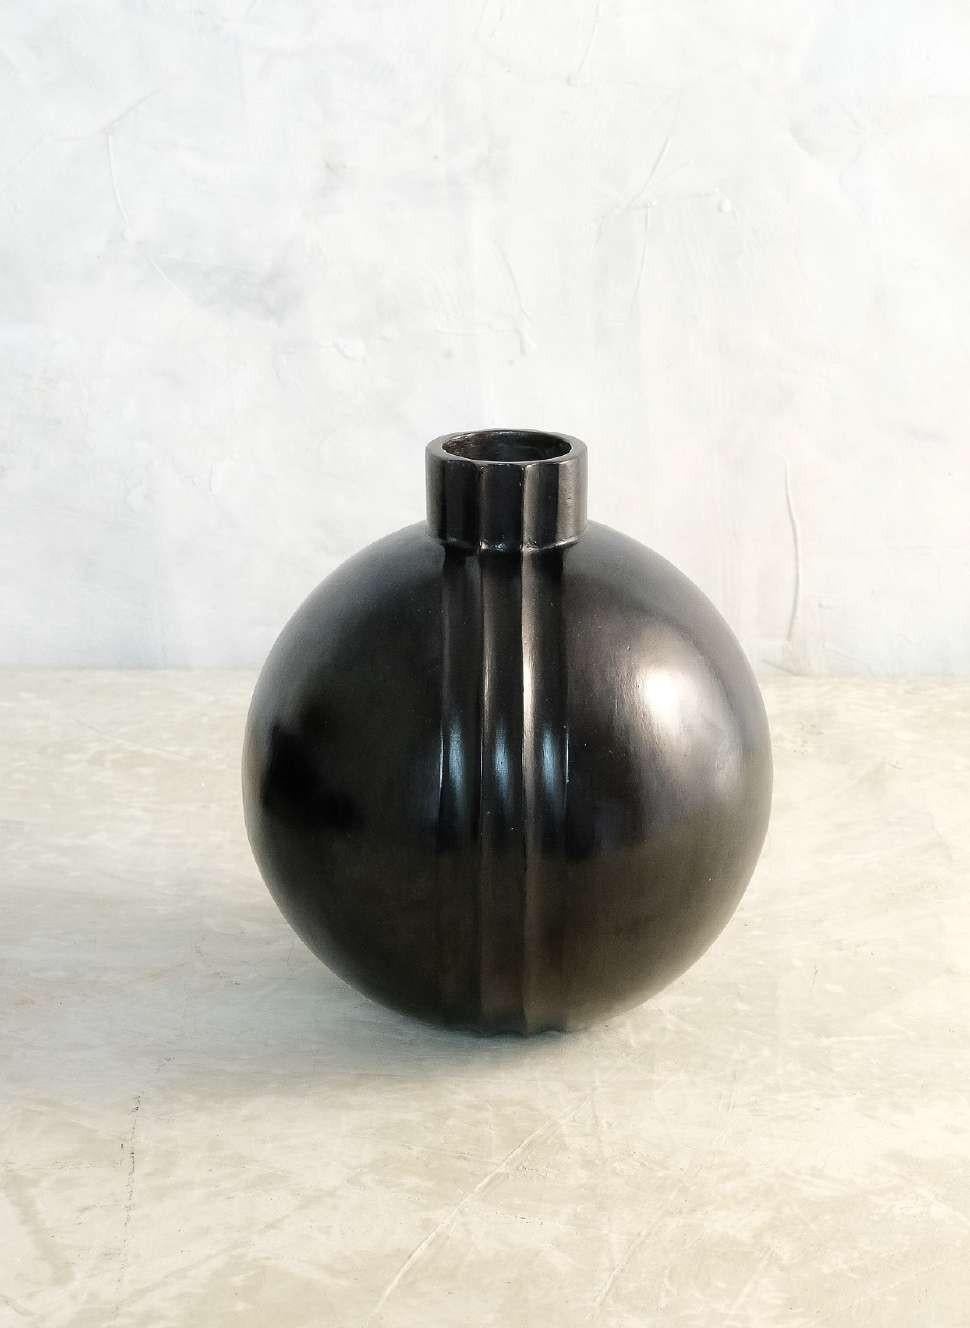 Paar Cascabel-Vasen von Onora
Abmessungen: T 23 x H 20 cm
Materialien: Lehm

Diese Kollektion interpretiert eine der ältesten Strukturtechniken in der Töpferei neu, das Wickeln. Die mit dieser Technik hergestellten Gefäße bestehen aus